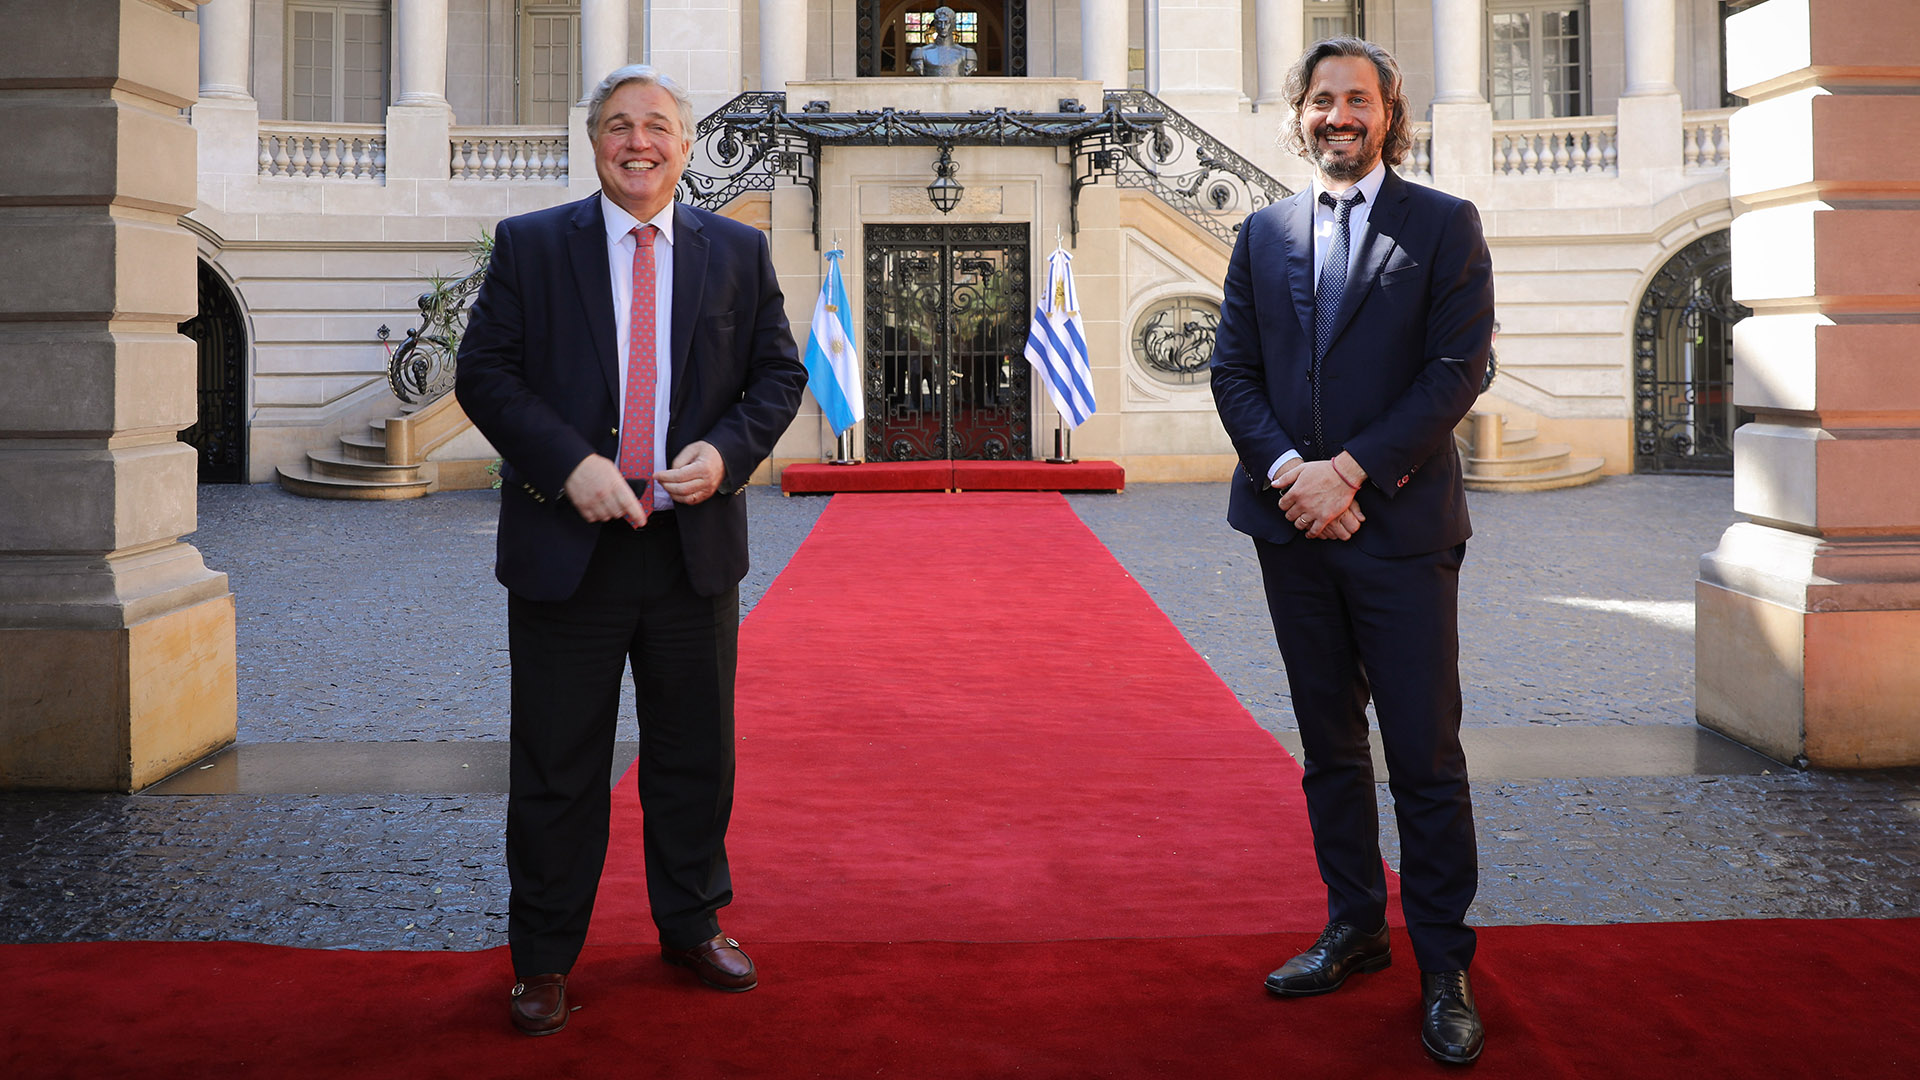 Sonrisas y alfombra roja. Los ministros de Uruguay y Argentina se mostraron distendidos.